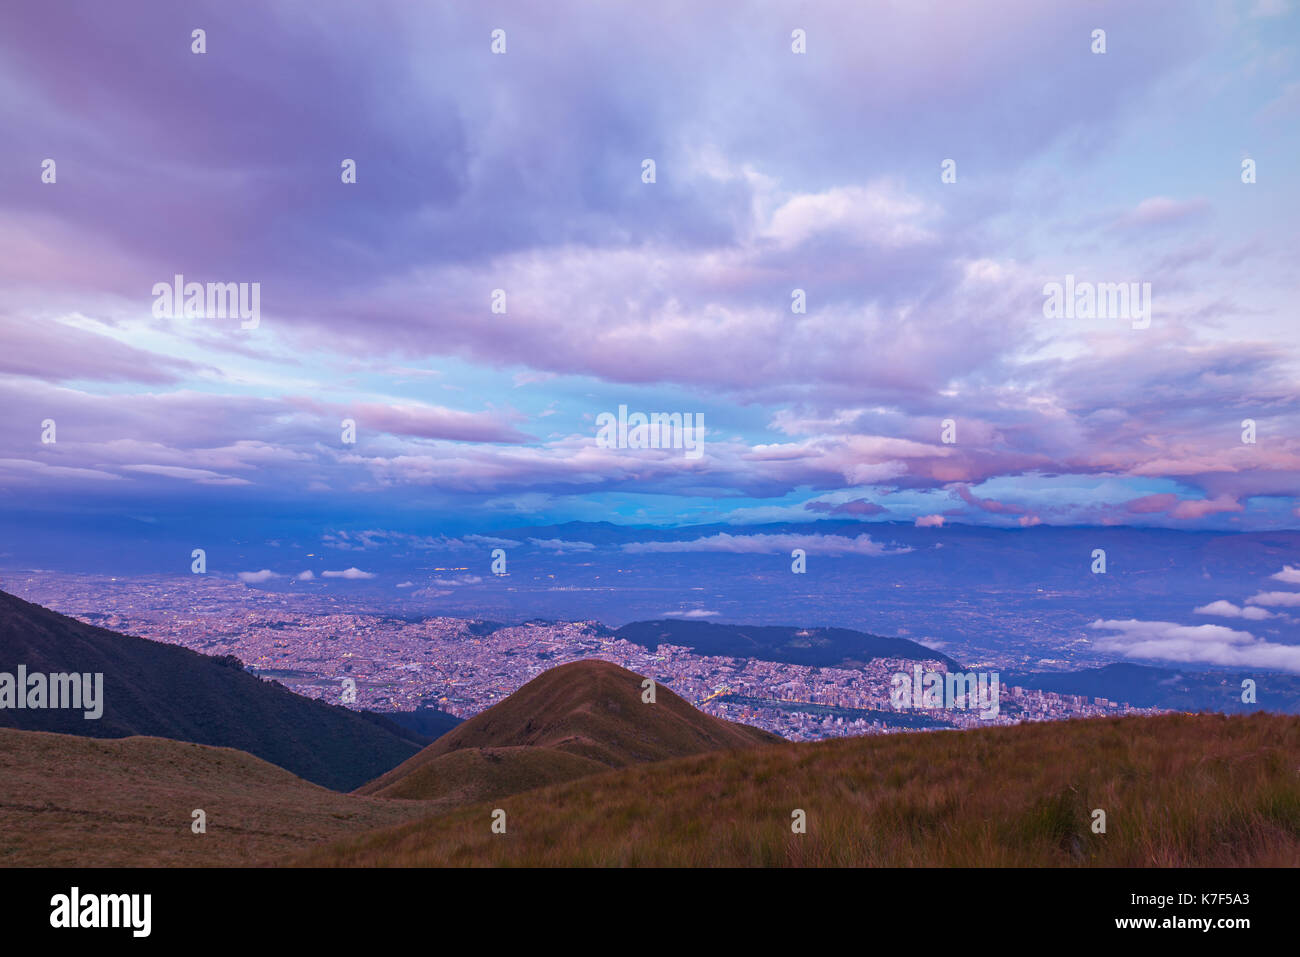 Die Skyline von Quito City bei Dämmerung mit einer langen Belichtungszeit und Luftaufnahme Foto aus dem aktiven Vulkan Pichincha, Ecuador, Lateinamerika gesehen. Stockfoto